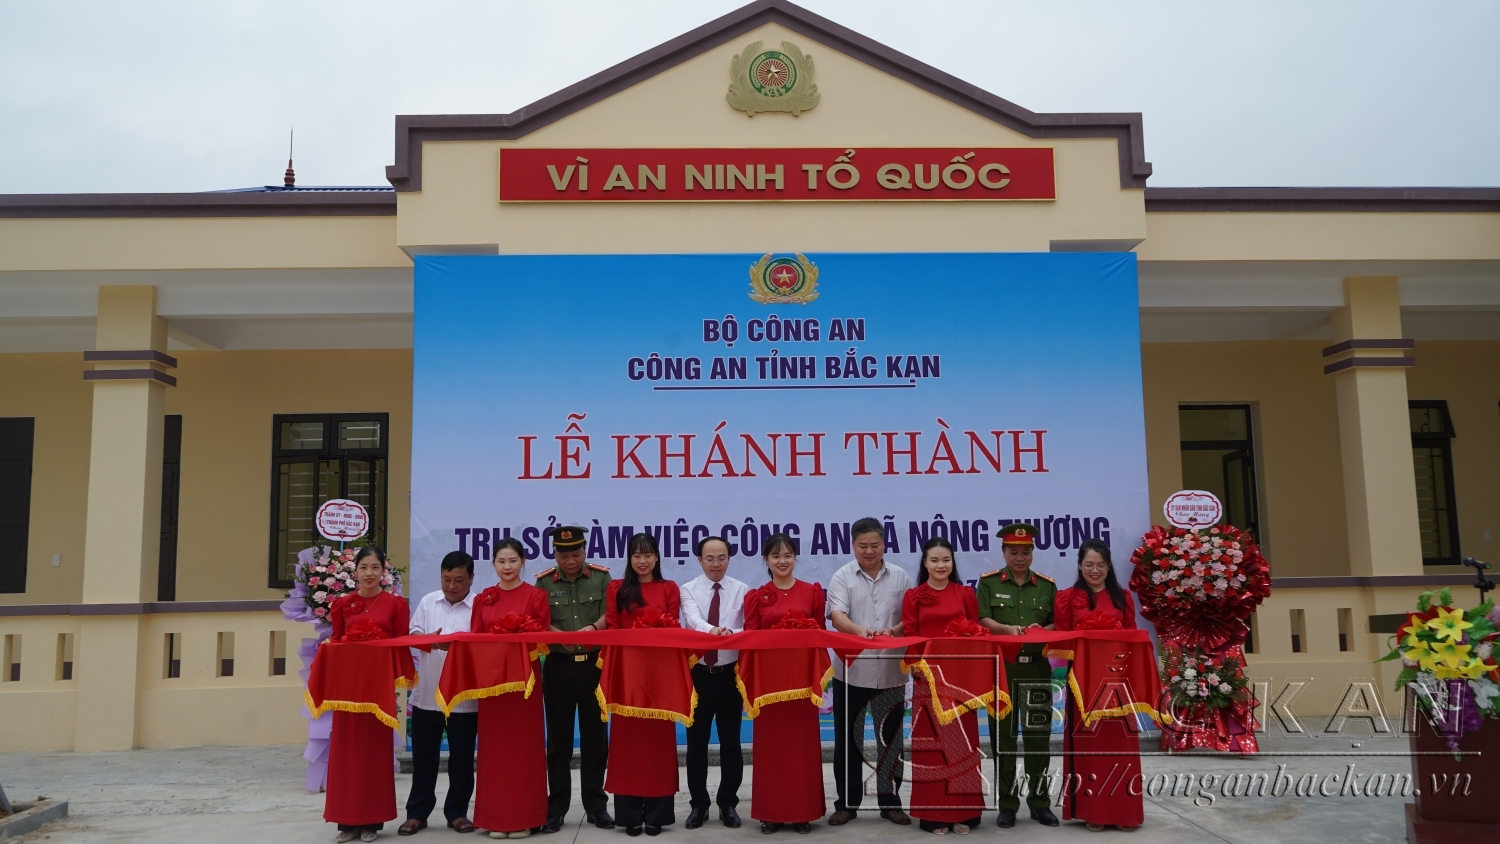 Đồng chí Nguyễn Đăng Bình, Chủ tịch UBND tỉnh cùng các đại biểu cắt băng khánh thành Trụ sở làm việc Công an xã Nông Thượng